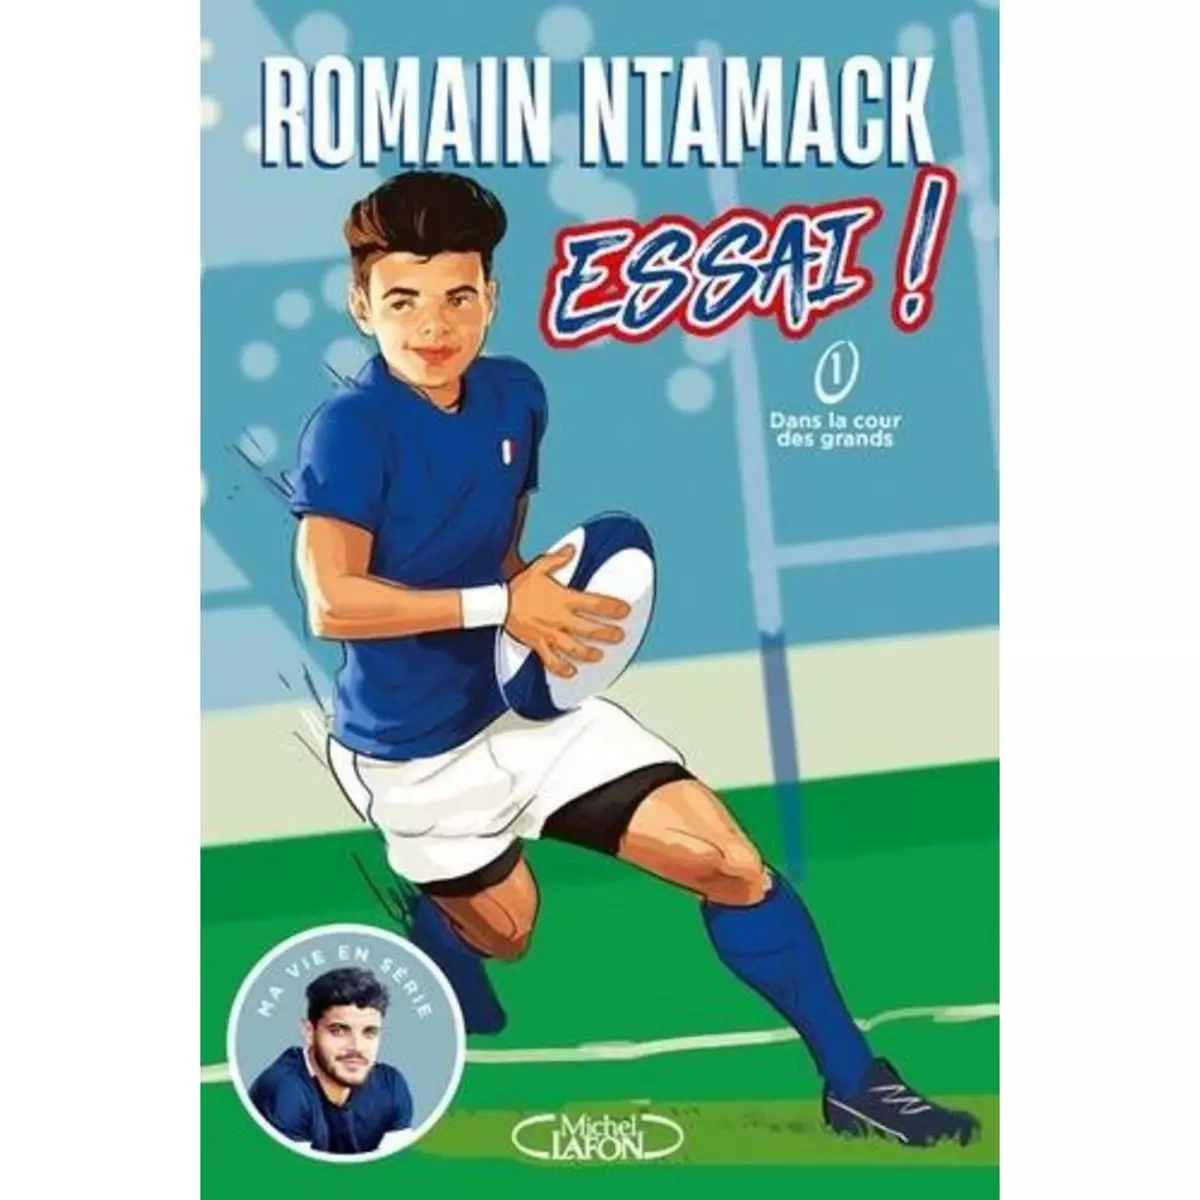  ESSAI ! TOME 1 : DANS LA COUR DES GRANDS, Ntamack Romain